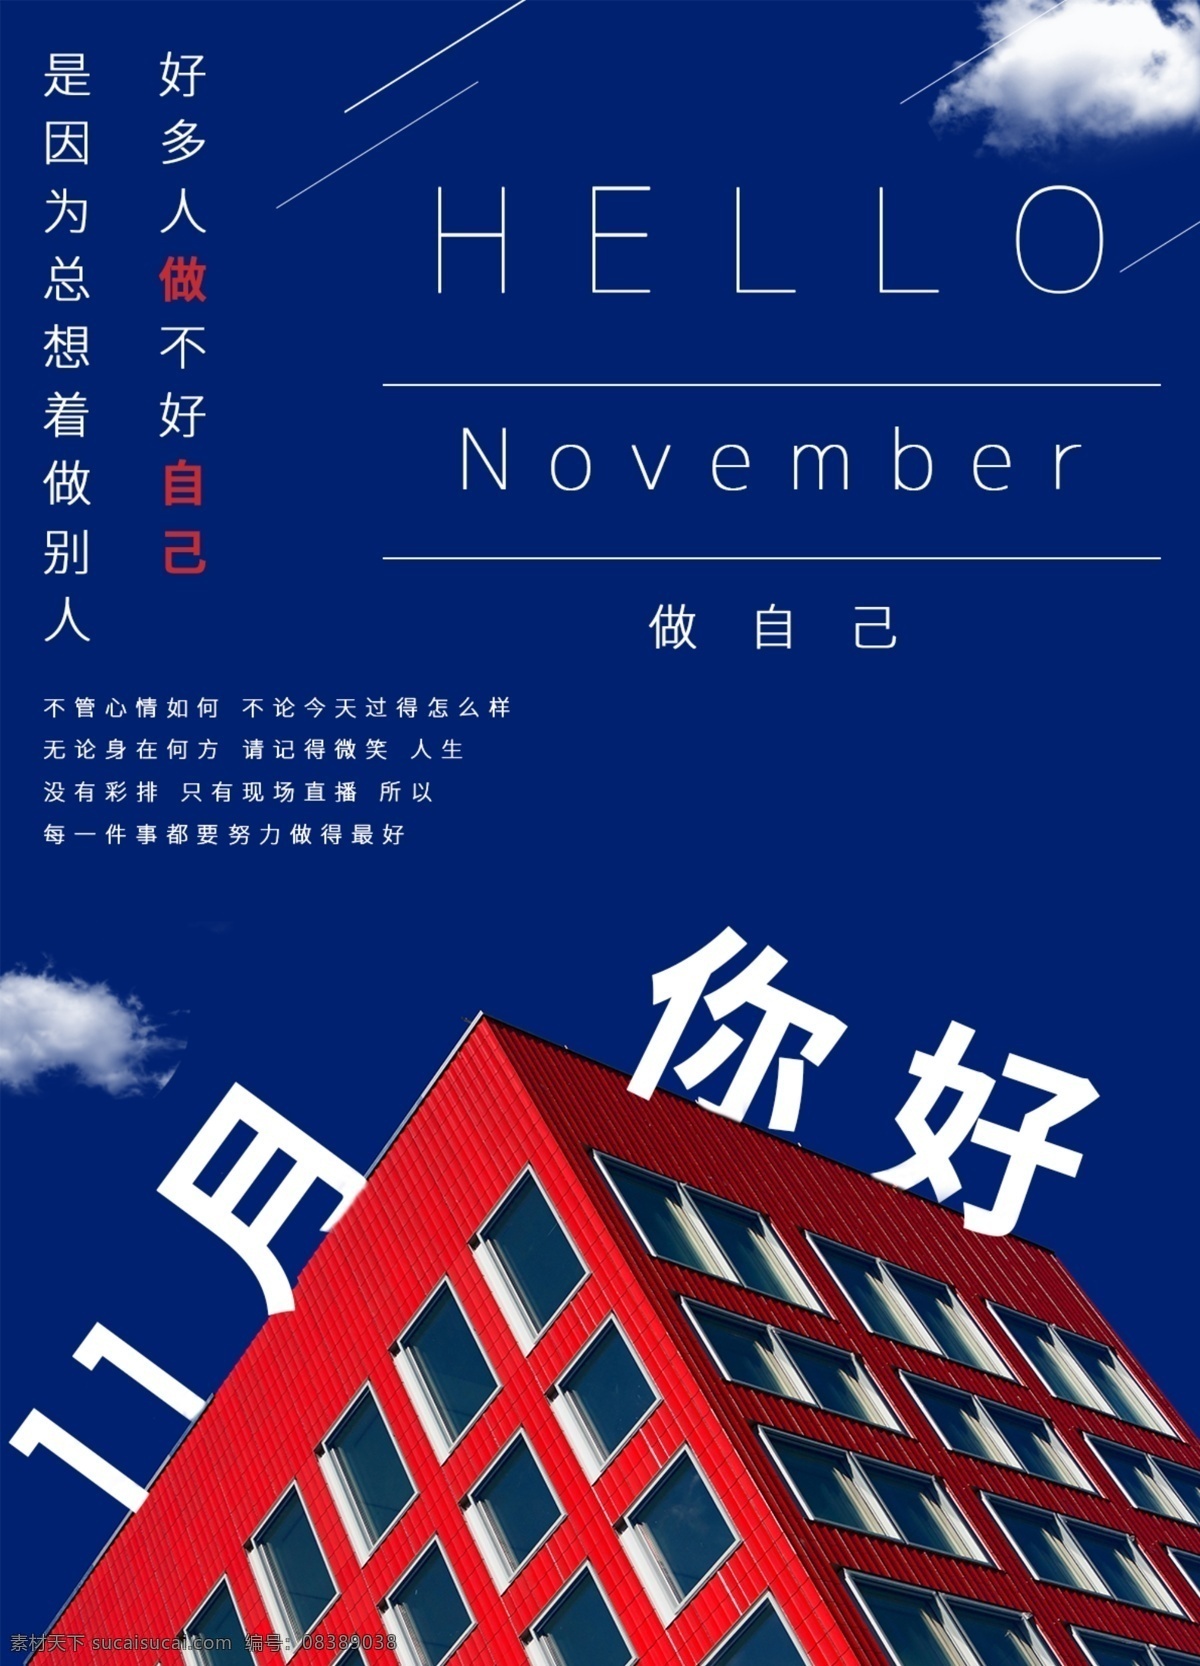 十一月 你好 做 自己 海报 11月 做自己 hello november